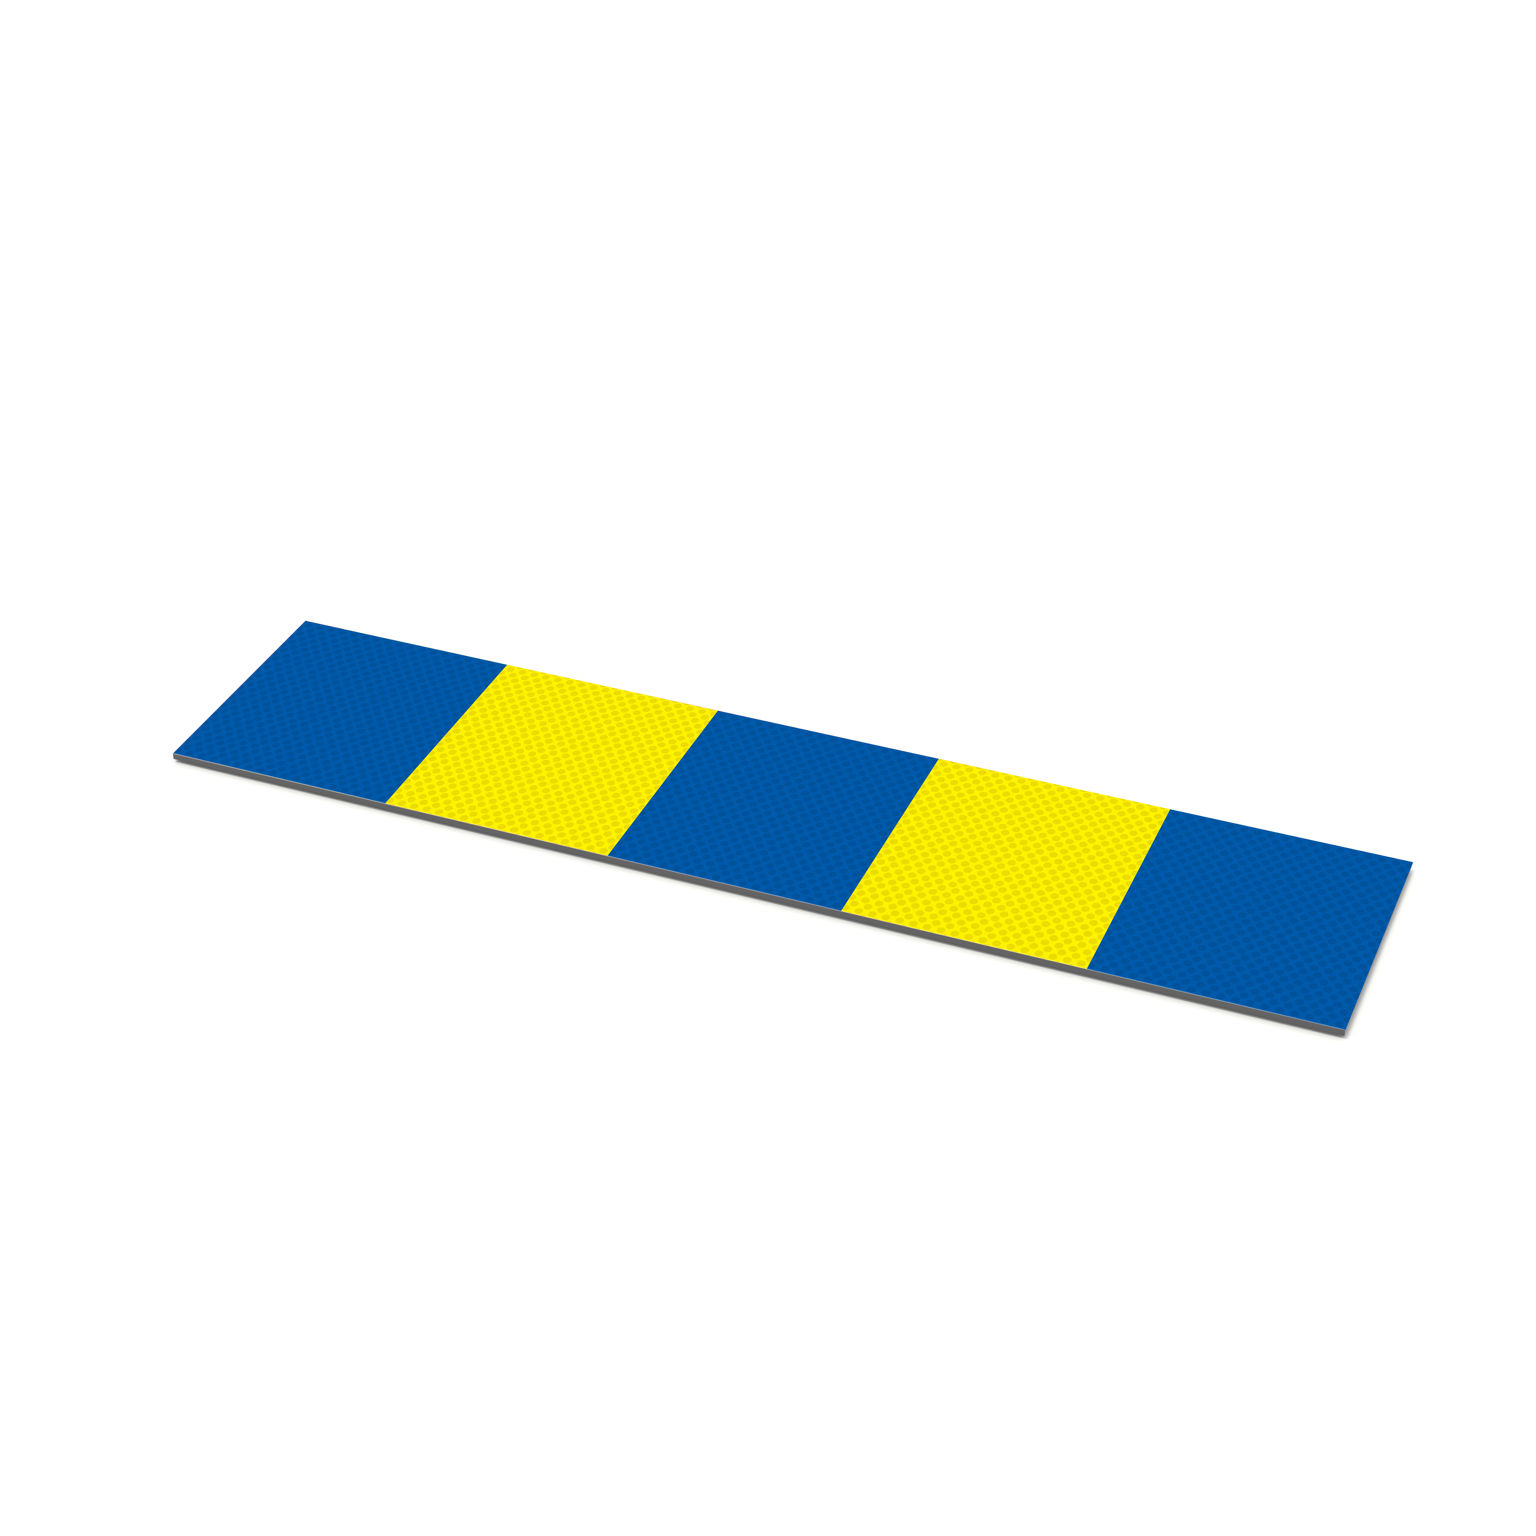 Reflexplatta till Trafistop-trafikhinder i betong. Markering i blått och gult för ett permenent trafikhinder